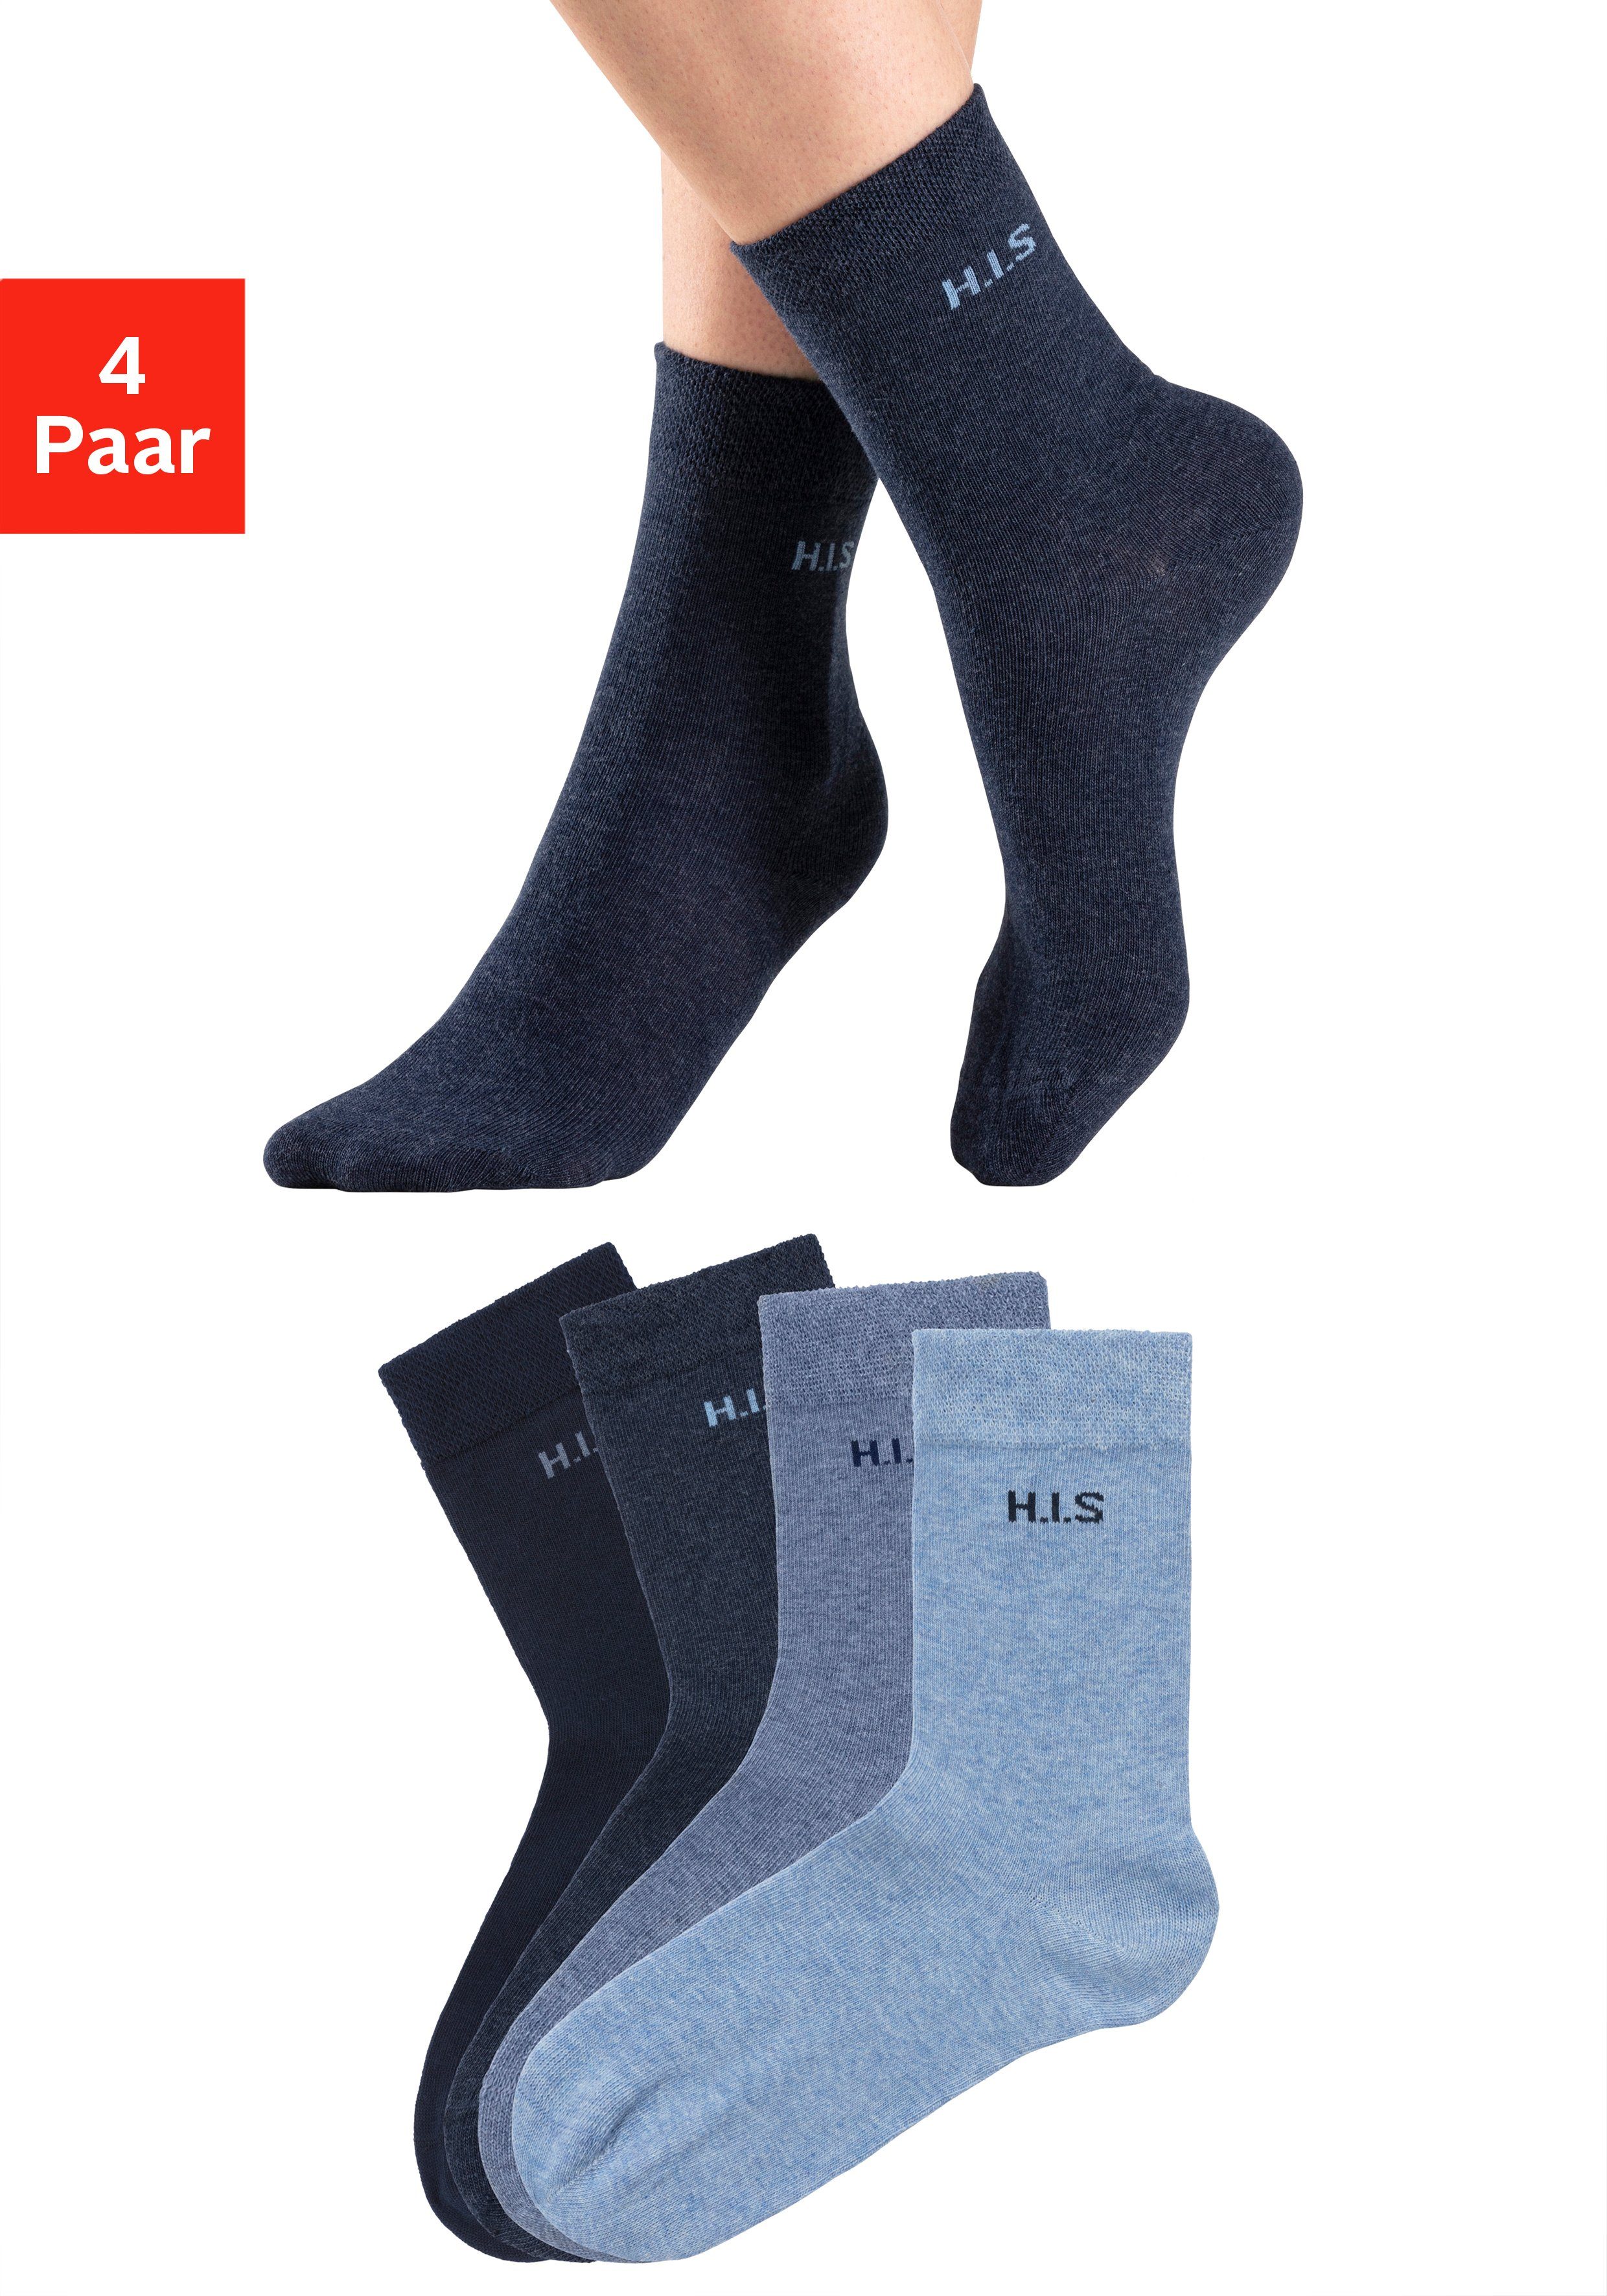 h.i.s sokken zonder snijdende boord (set, 4 paar) blauw